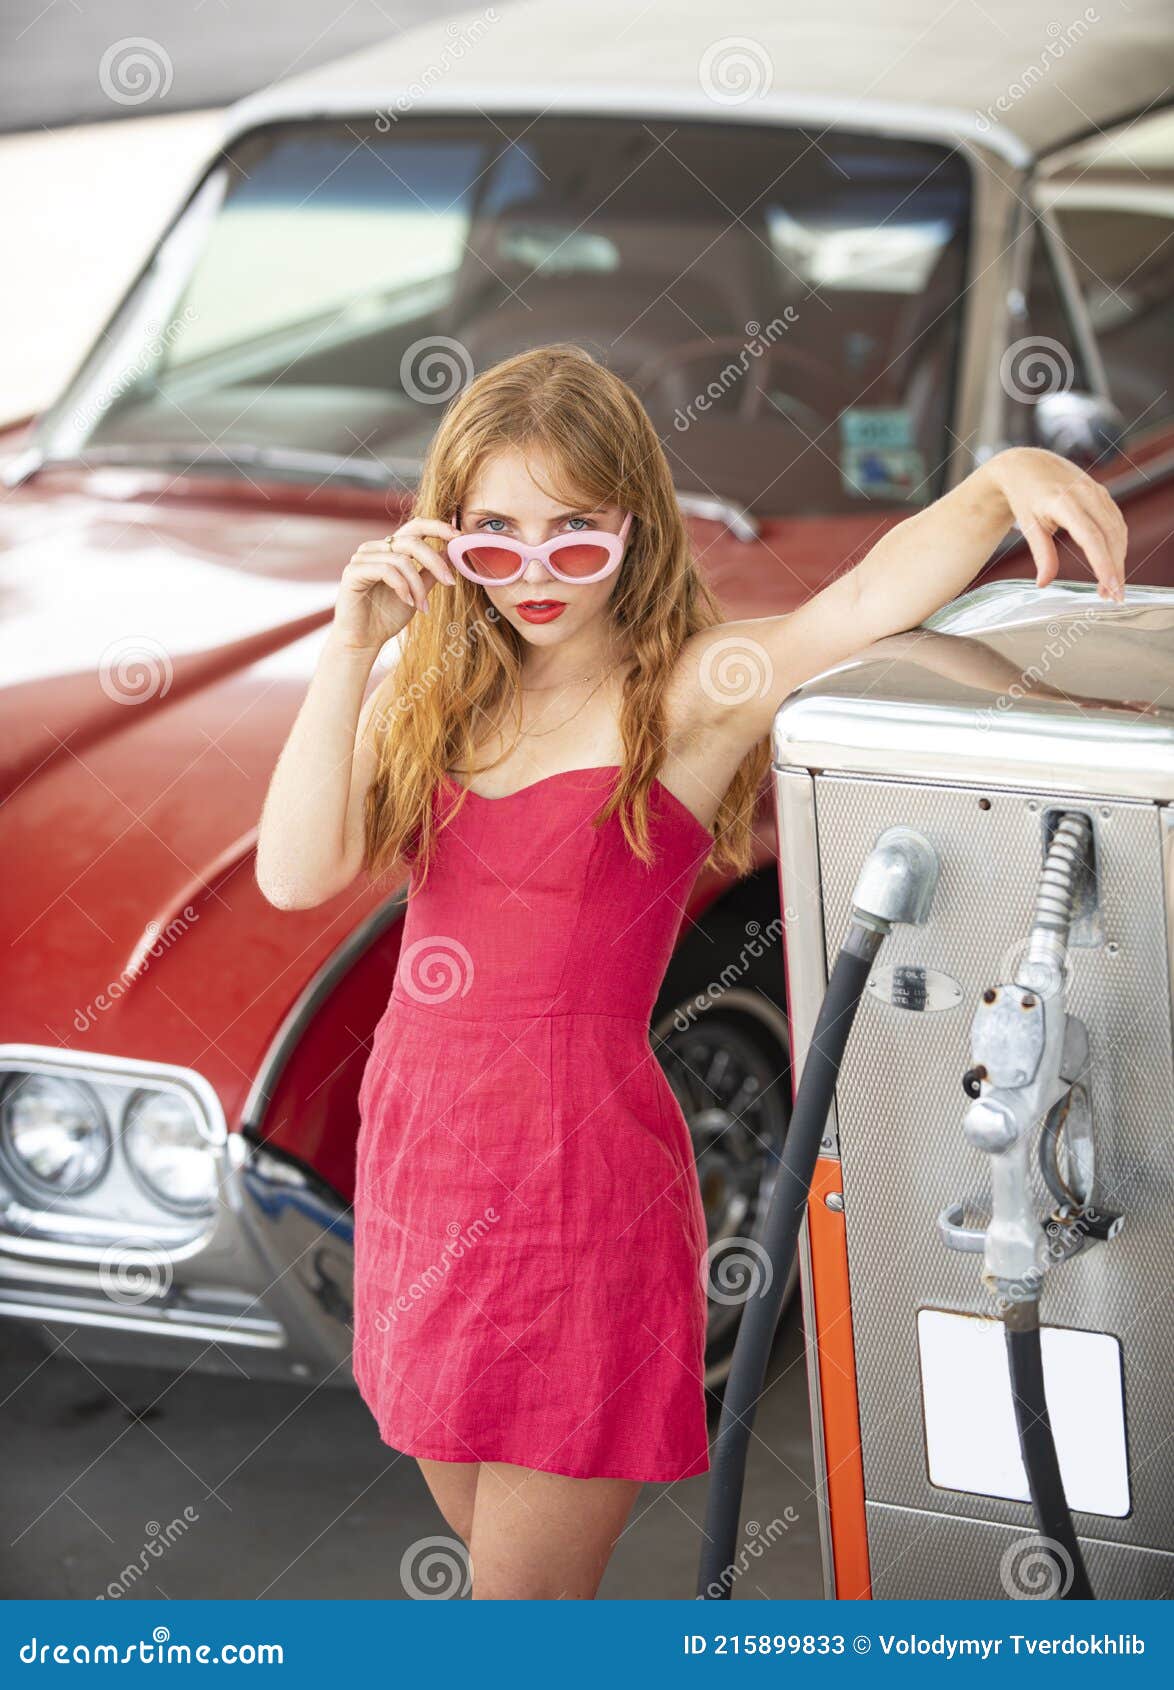 Das Mädchen Hat Eine Benzinpumpe in Der Hand. Tanken Mit Benzin Mit Einem  Benzinpumpenwagen an Einer Tankstelle Redaktionelles Stockbild - Bild von  fülle, mädchen: 194743724